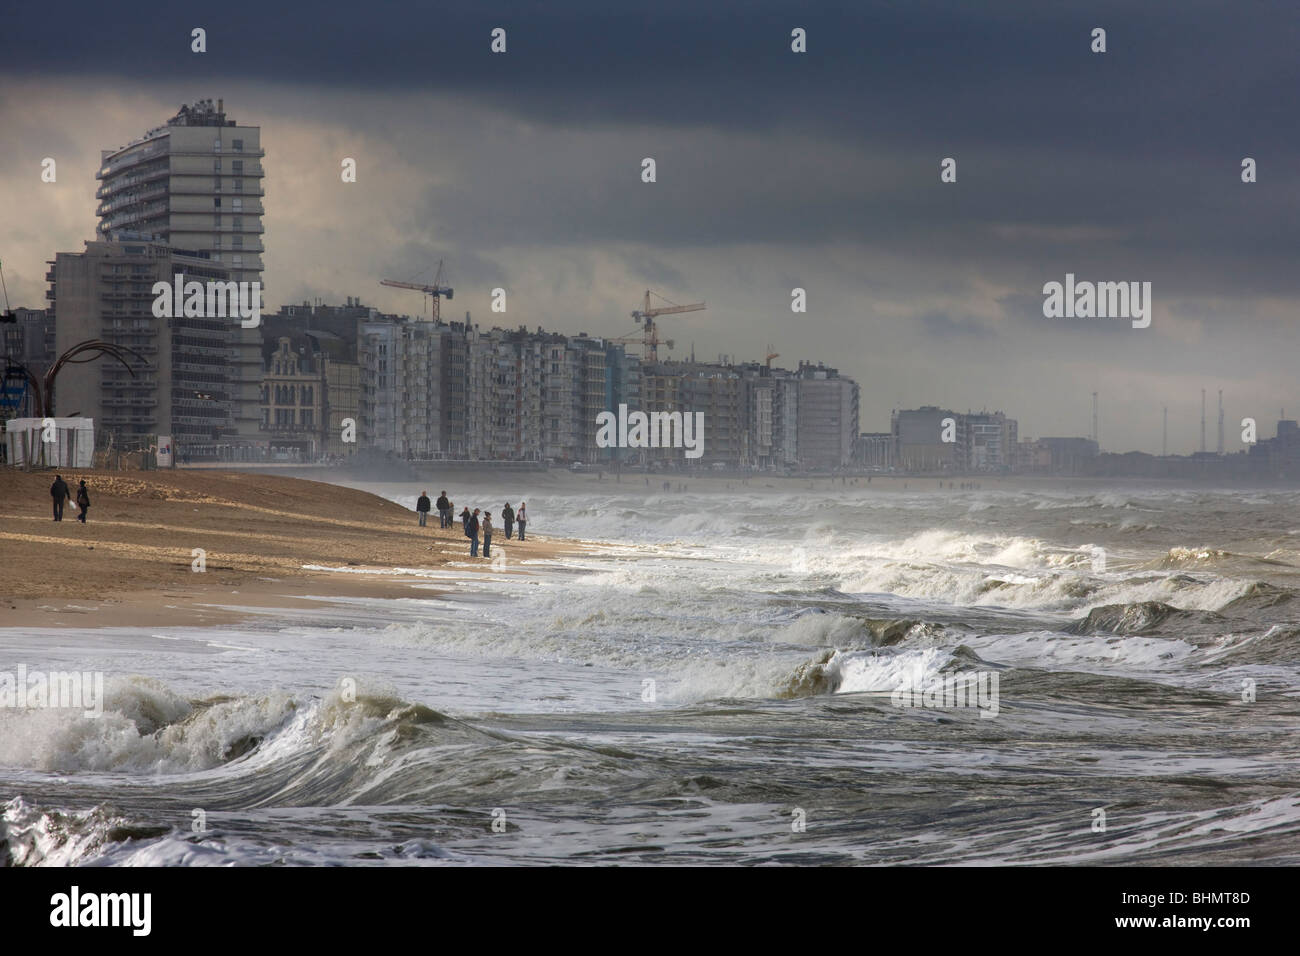 Blocco di appartamenti e la spiaggia durante la tempesta in mare, Ostenda, Belgio Foto Stock